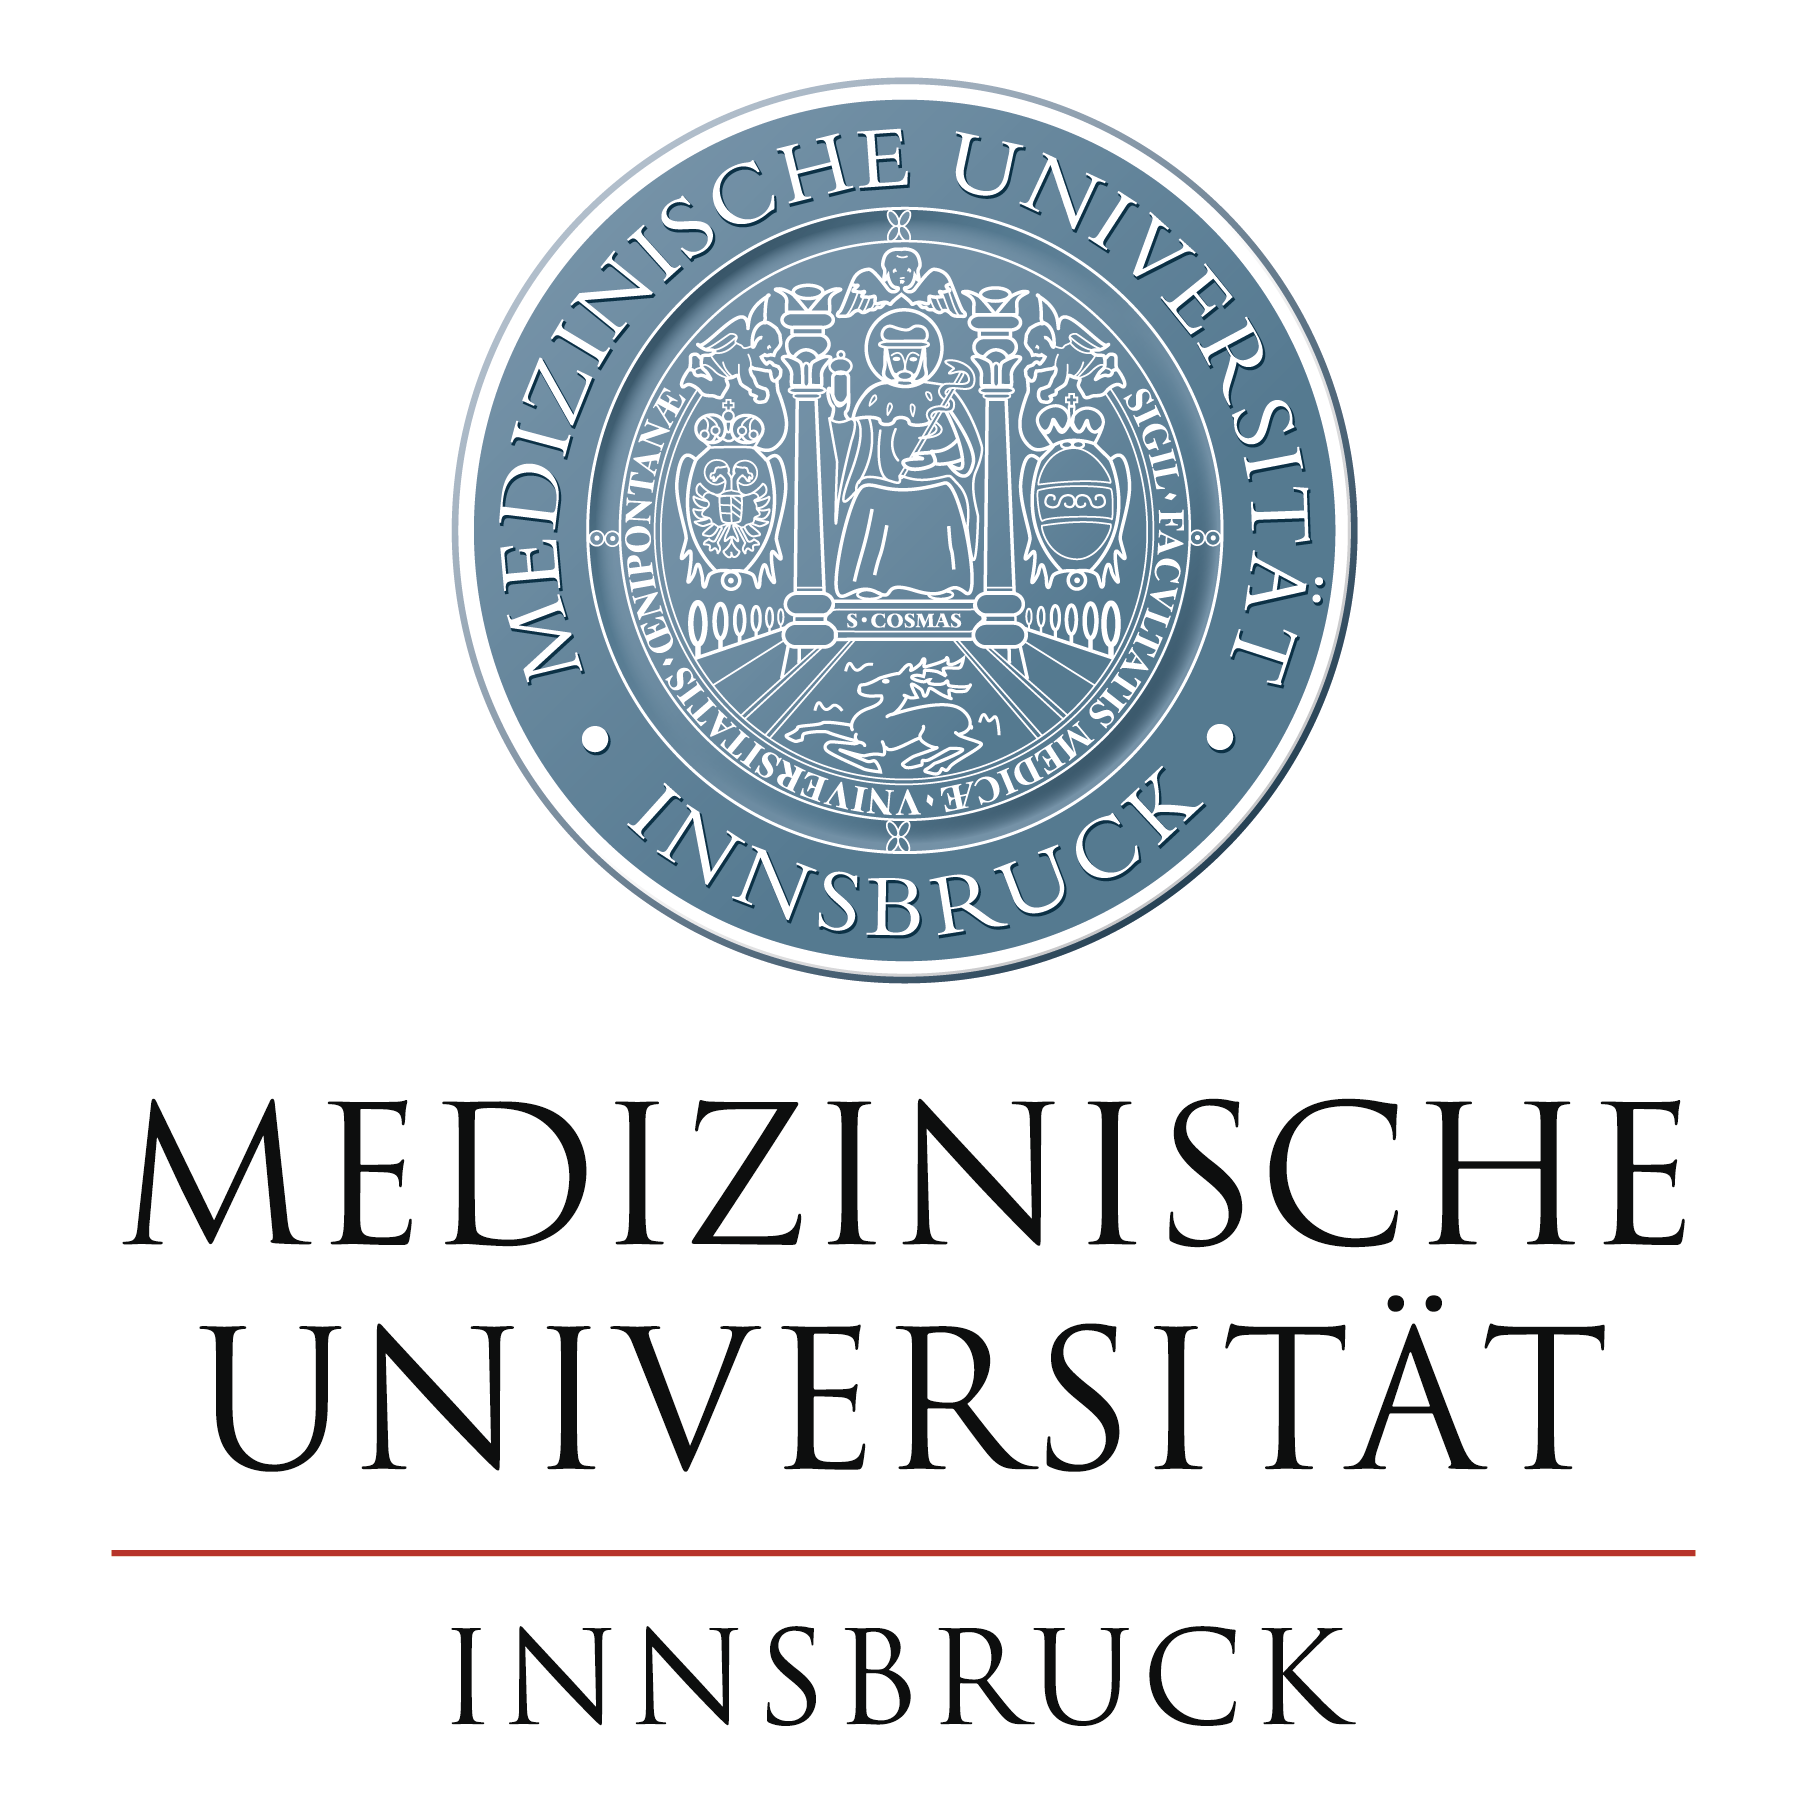 Seltene Entzündungskrankheit in Innsbruck identifiziert